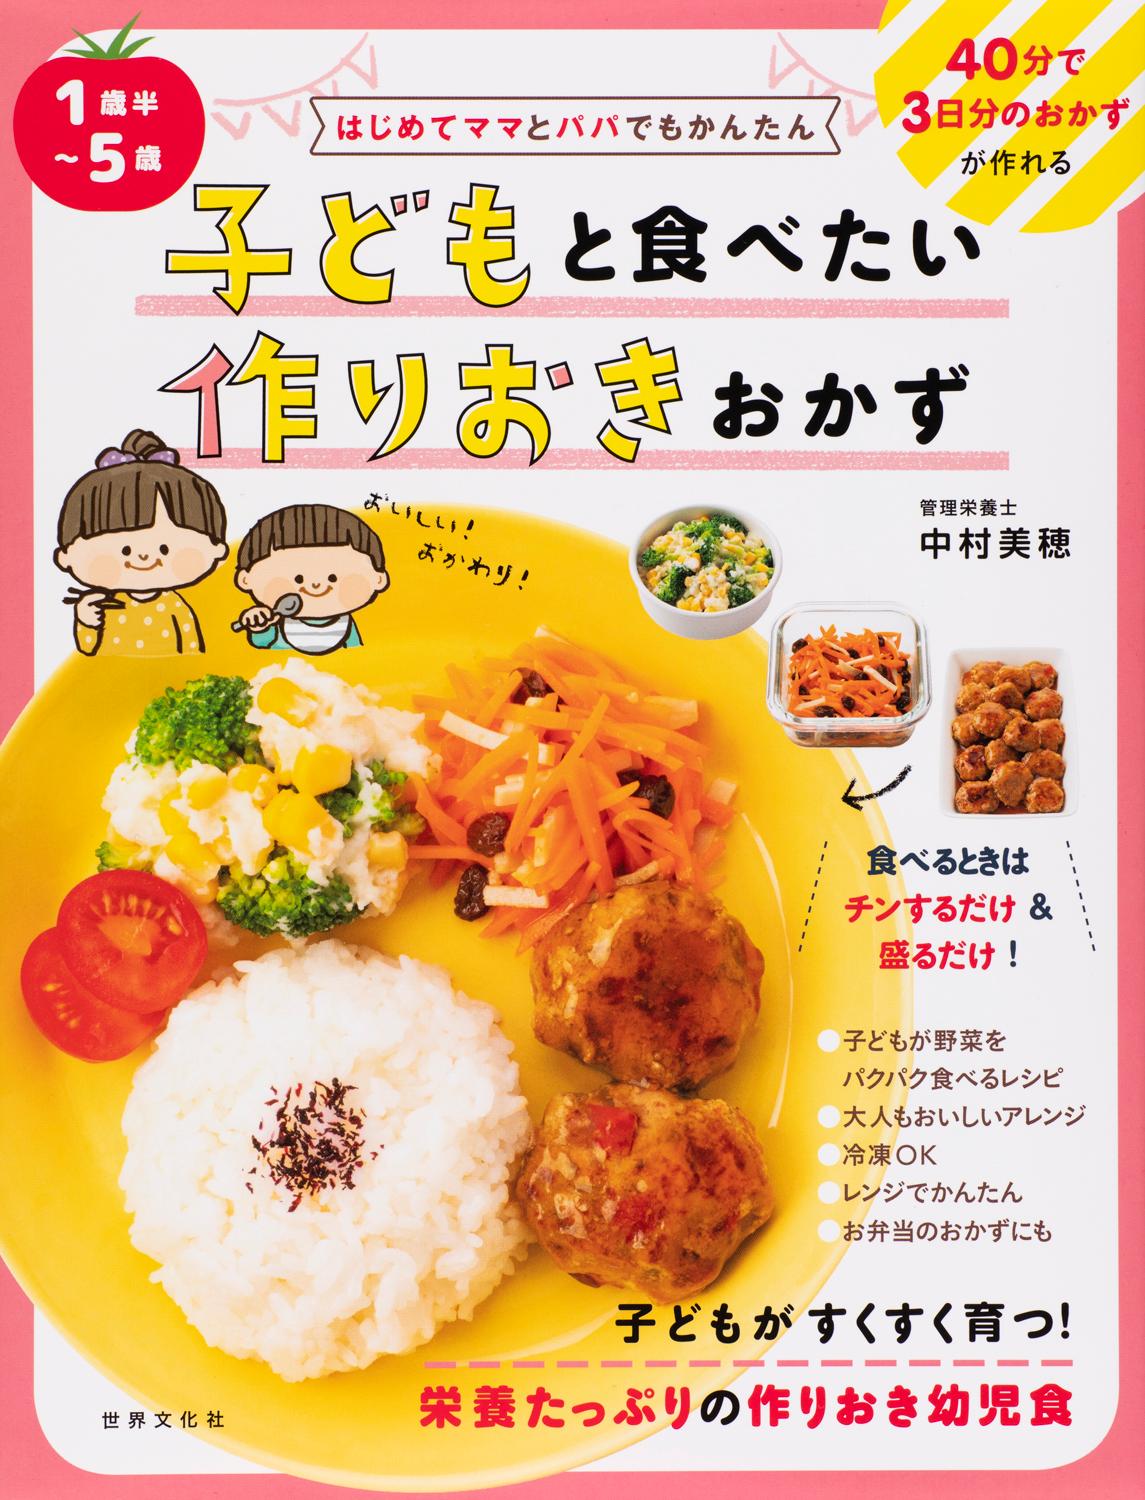 黄色いプレートにご飯とおかずが盛り付けられている「子どもと食べたい作りおきおかず」の表紙